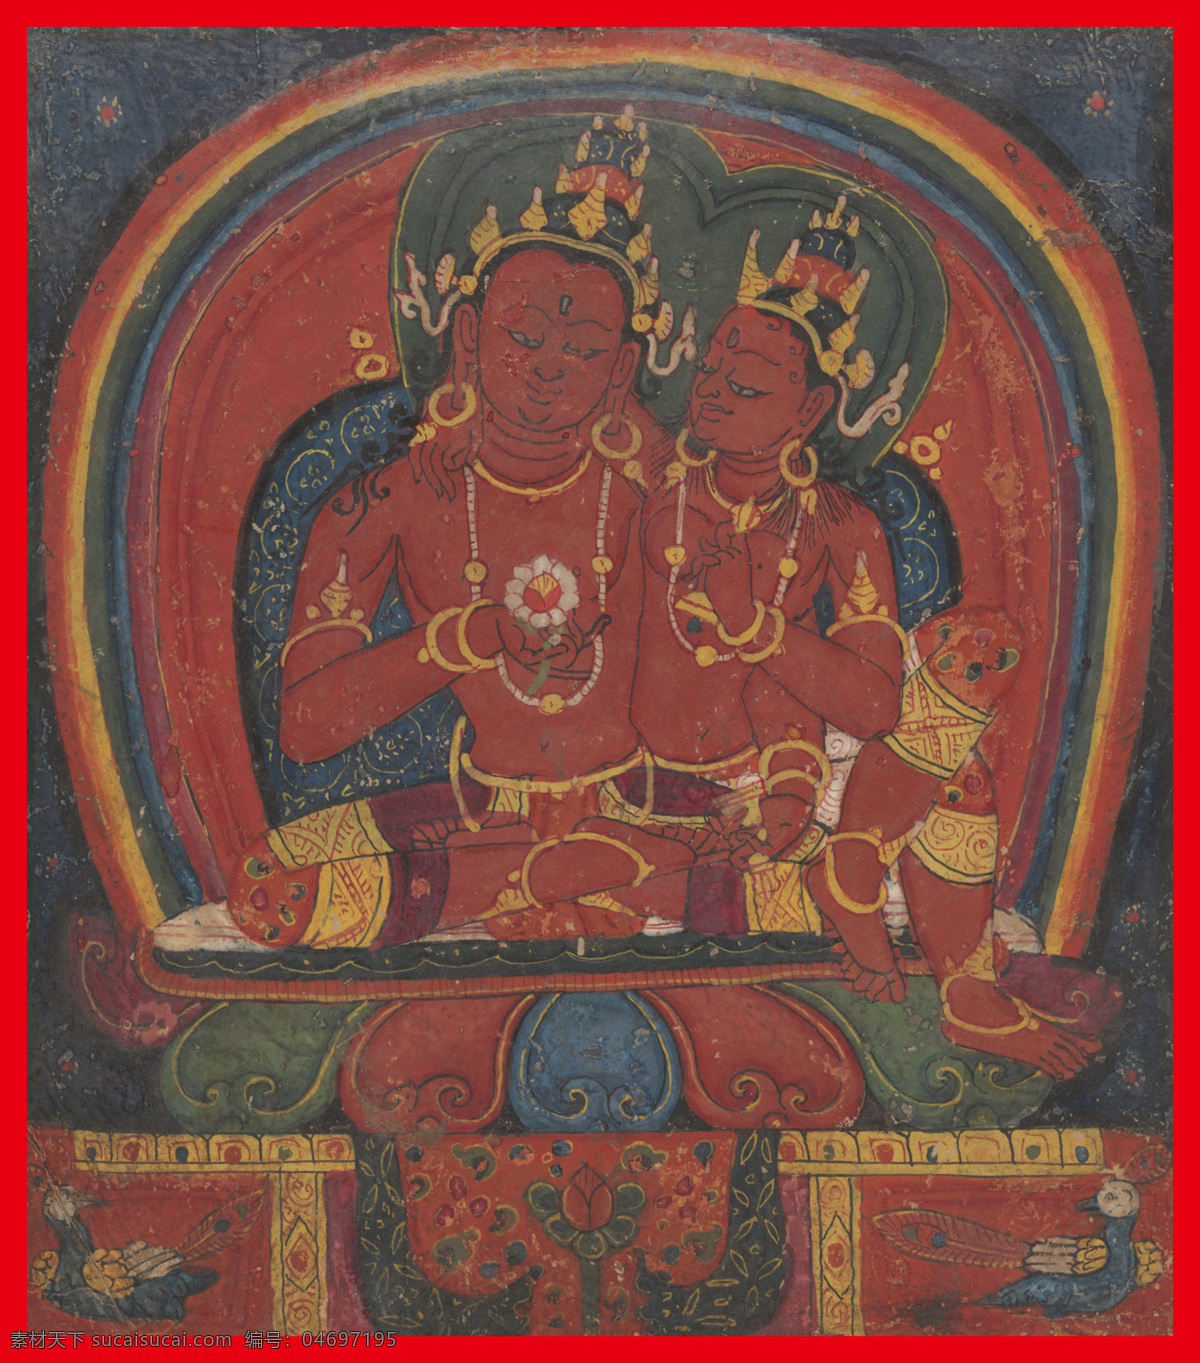 双 身 五方 佛 佛教 红色 莲花 文化艺术 西藏 宗教信仰 双身五方佛 五方佛 双身 慈悲 密宗